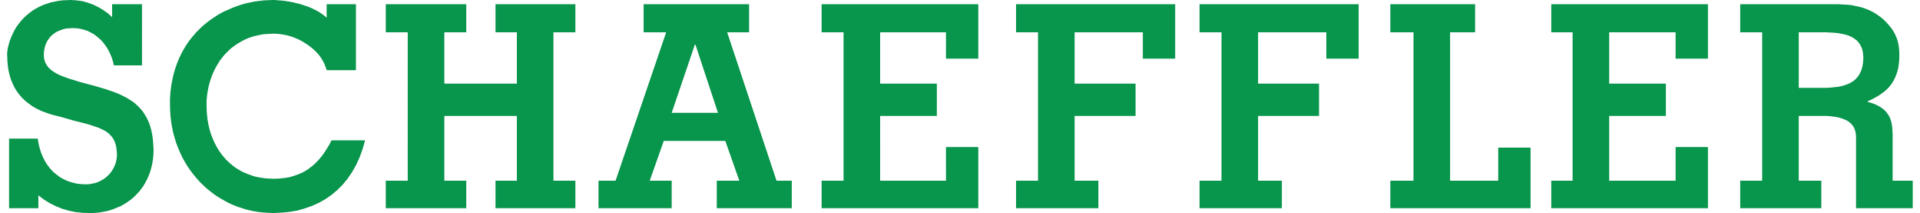 Logo société industrielle Schaeffler